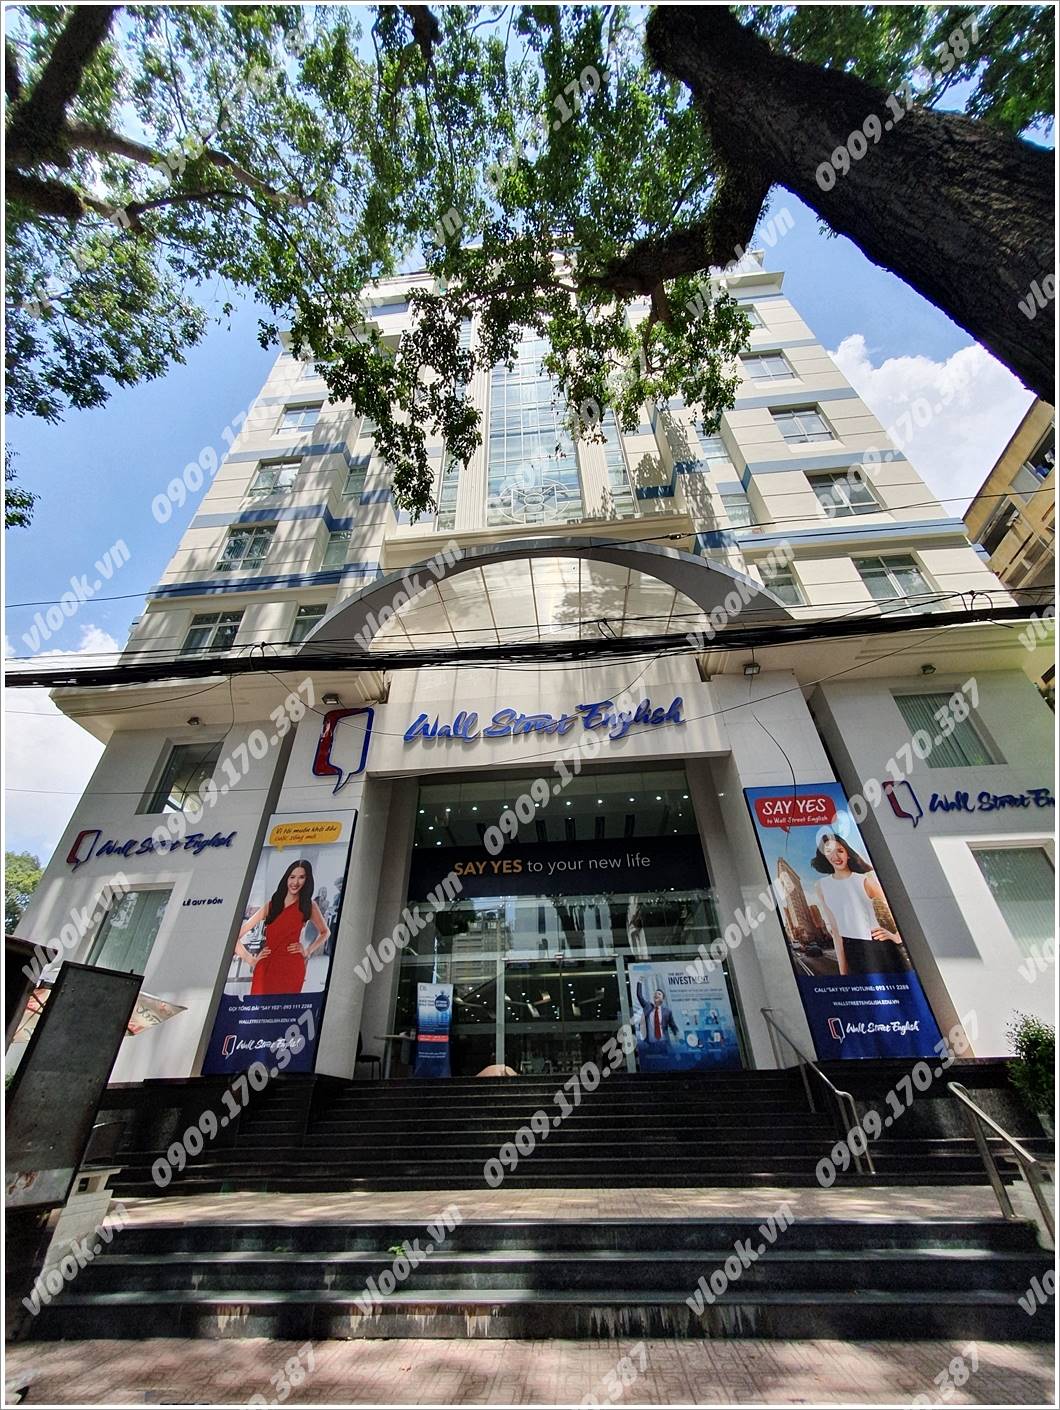 Cao ốc văn phòng cho thuê tòa nhà Tòa nhà Minh Phú, Lê Quý Đôn, Quận 3, TPHCM - vlook.vn